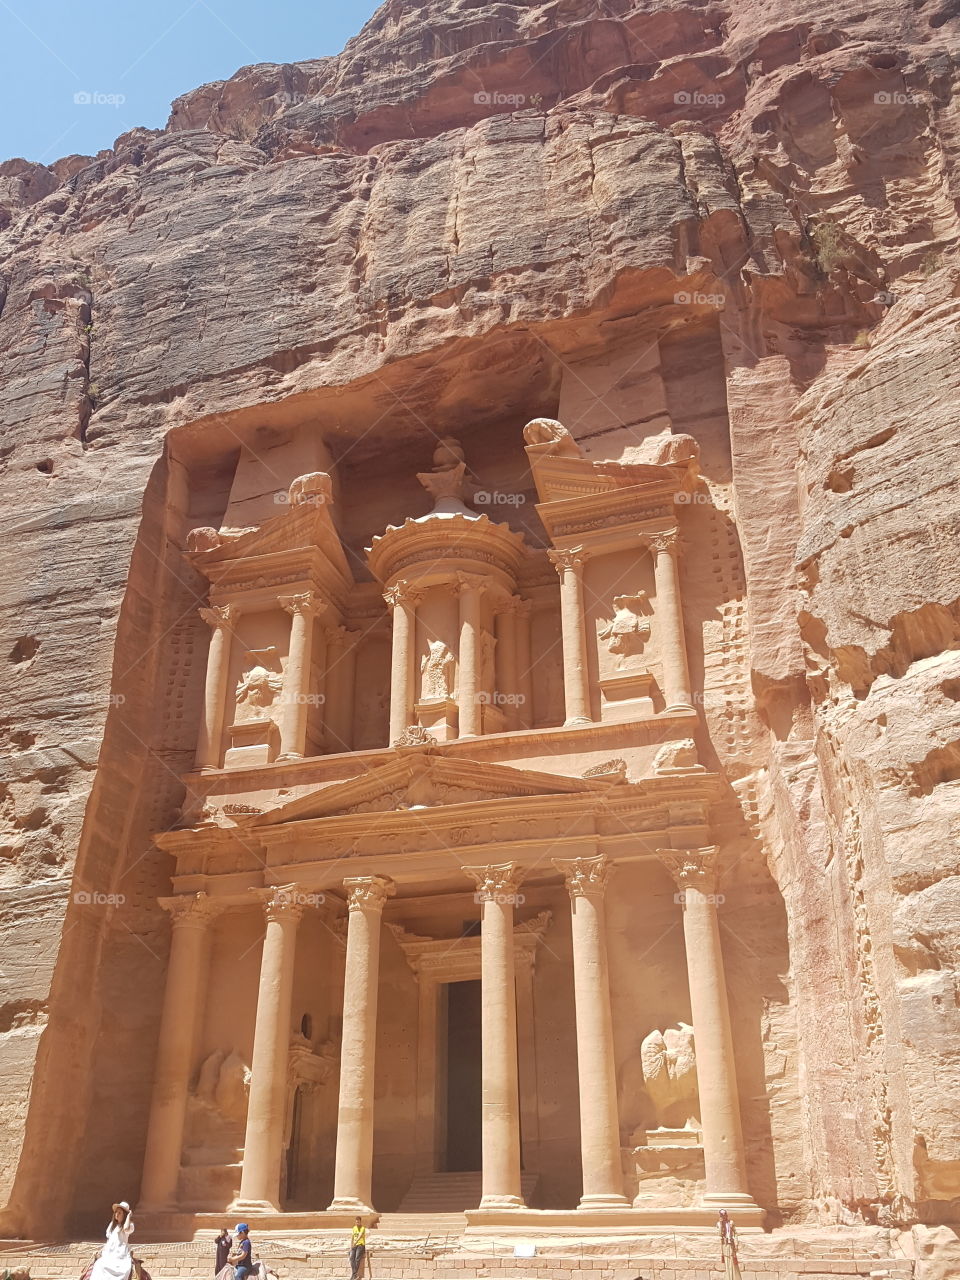 Treasury building, Petra, Jordan.